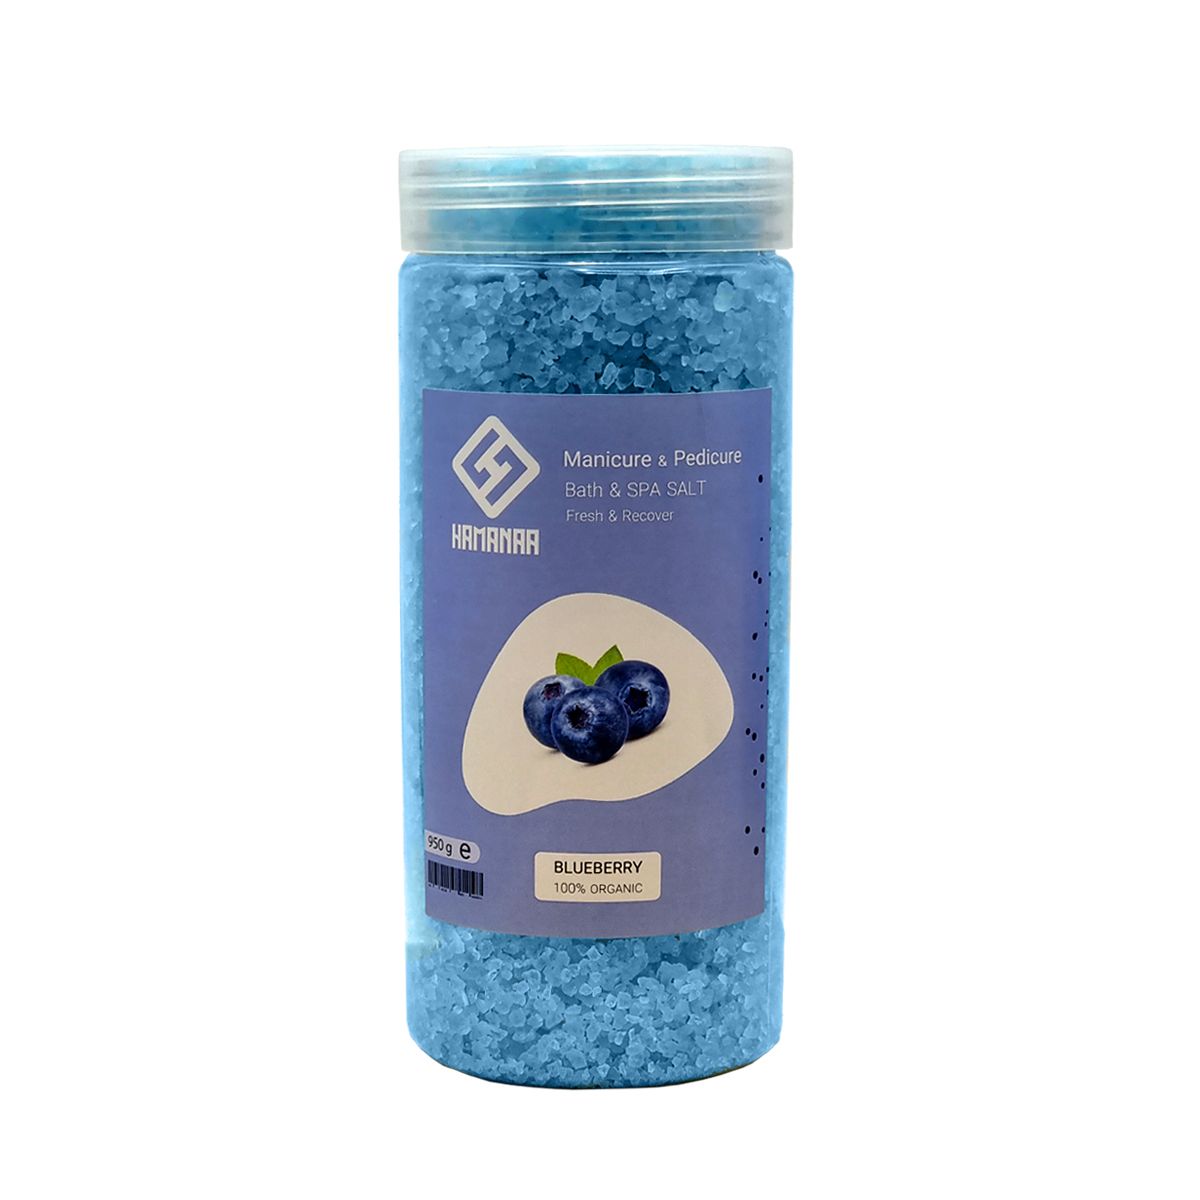 نمک حمام هامانا مدل Blueberry وزن 950 گرم -  - 1